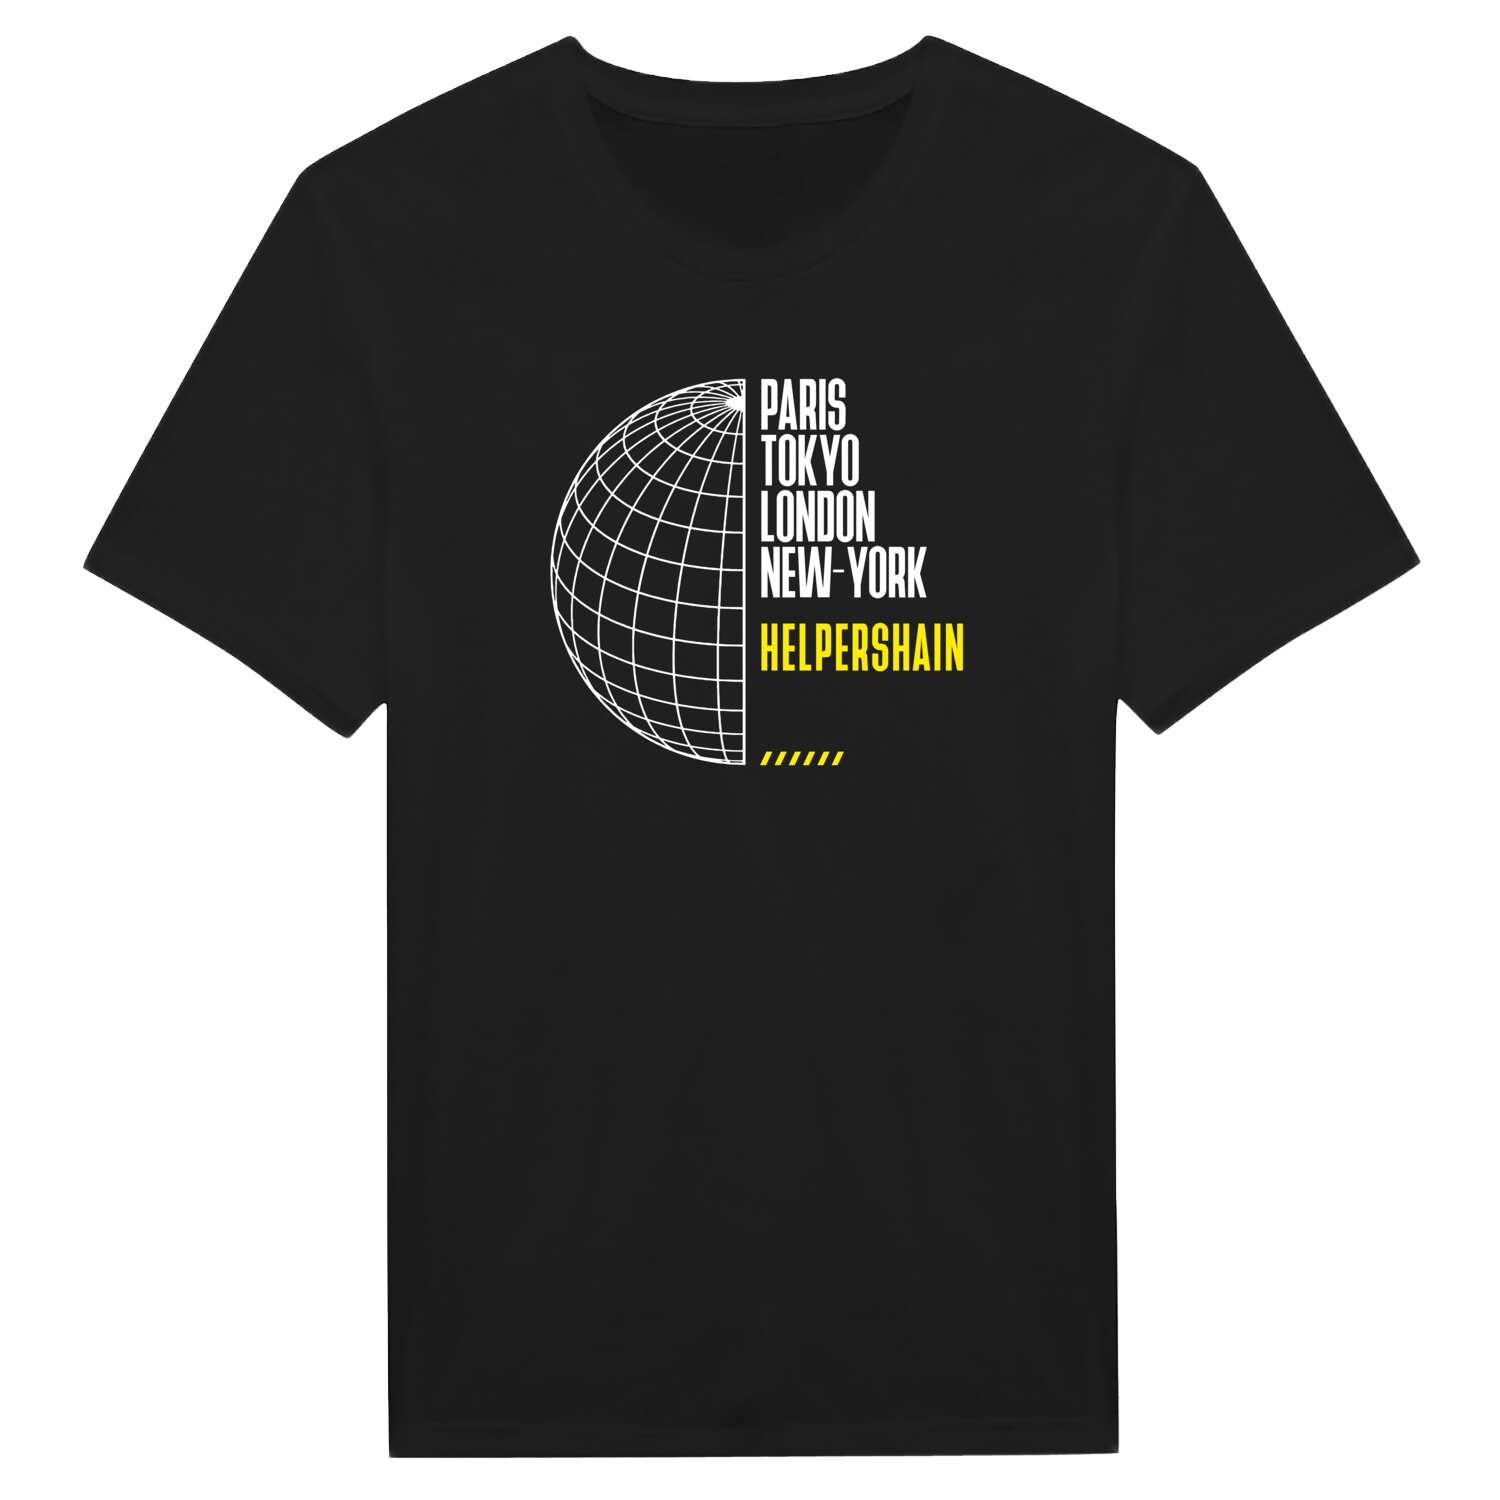 Helpershain T-Shirt »Paris Tokyo London«